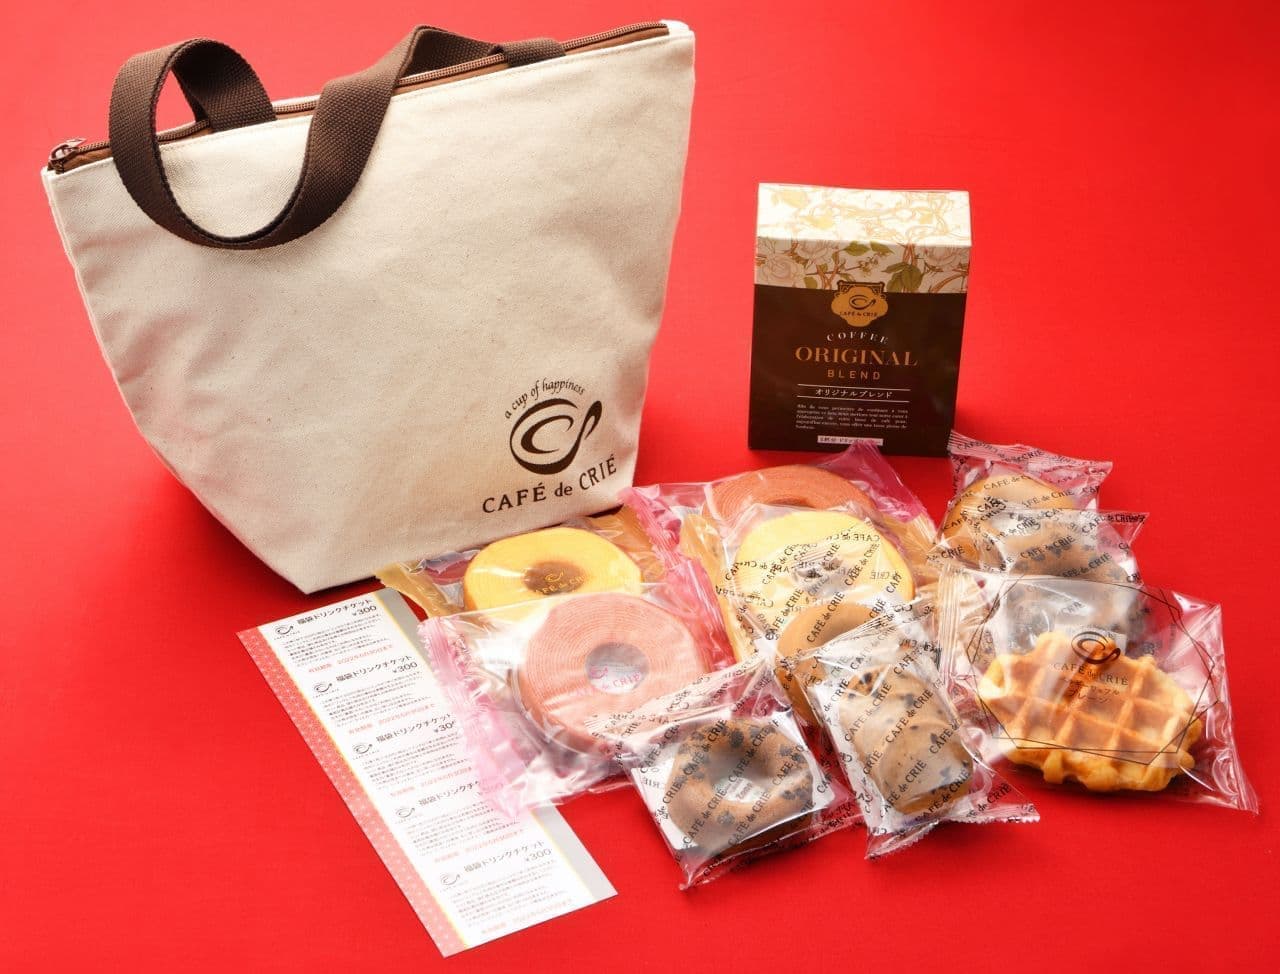 Cafe de Clie lucky bag